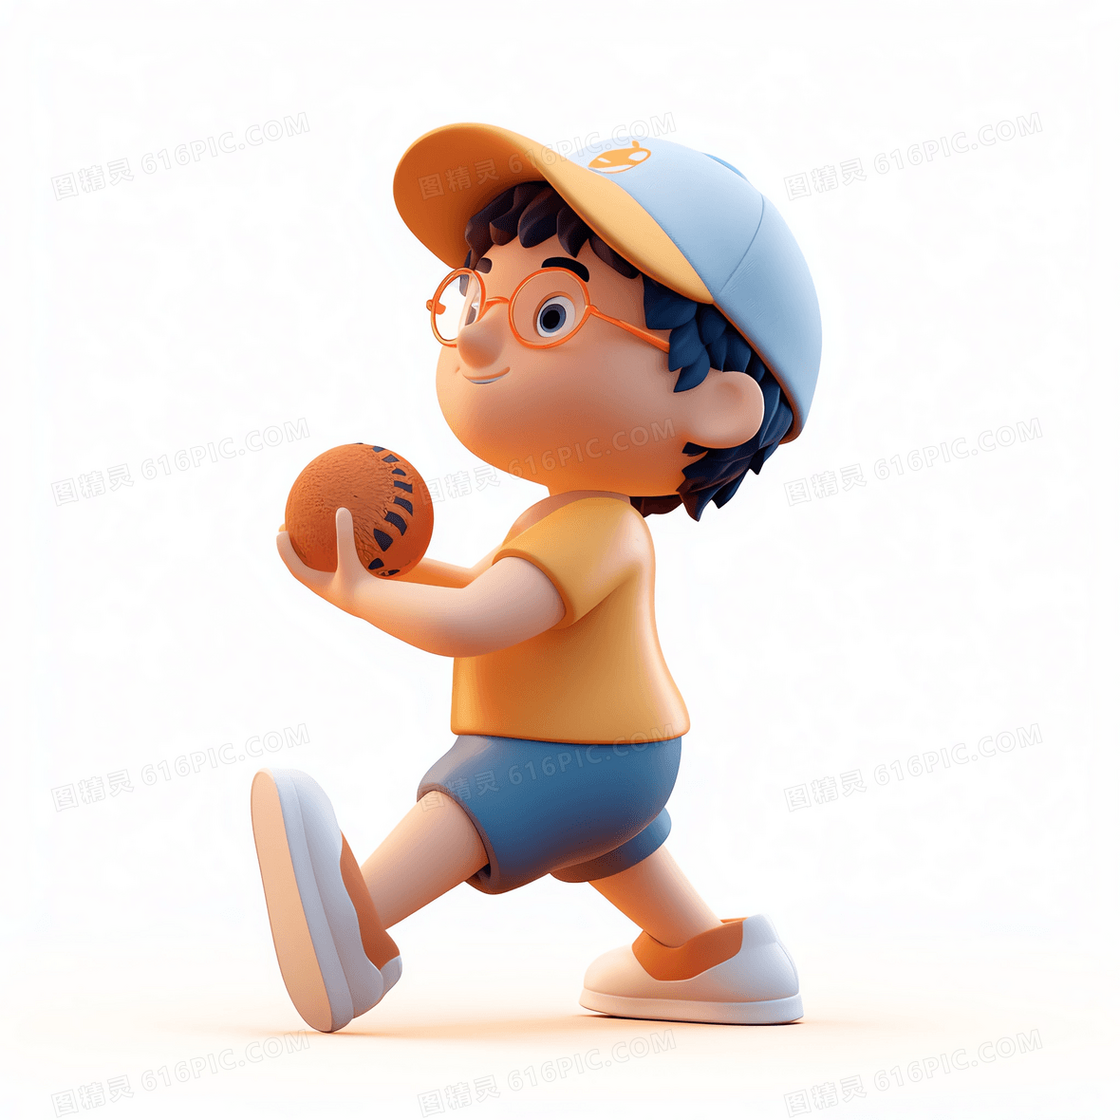 大跨步准备投垒球的可爱男孩3D模型